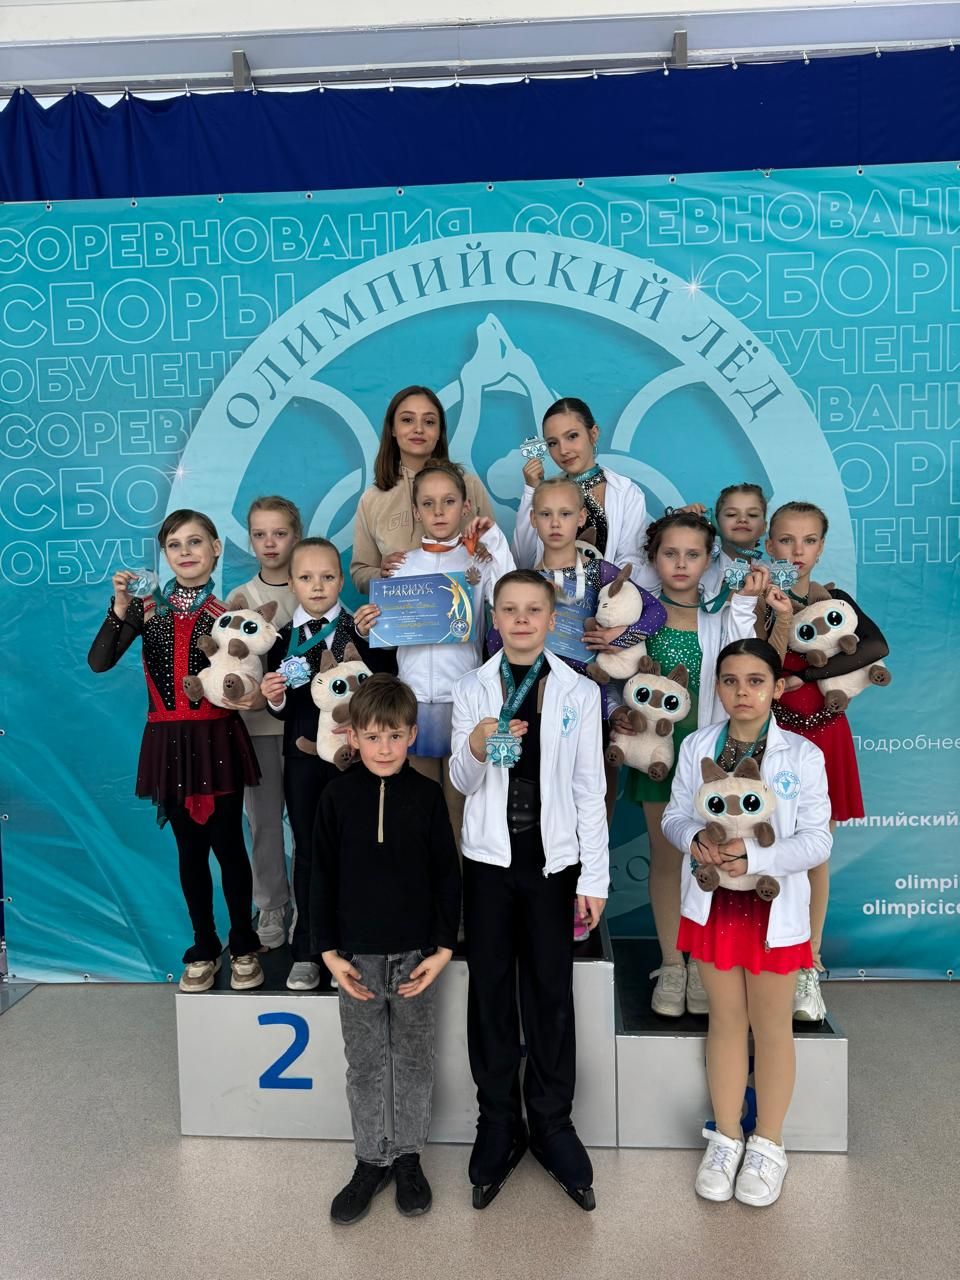 14 молодых спортсменов из Чернянского района приняли участие в соревнованиях по фигурному катанию на коньках и в фестивале «Олимпийский Лёд» в г. Сочи.